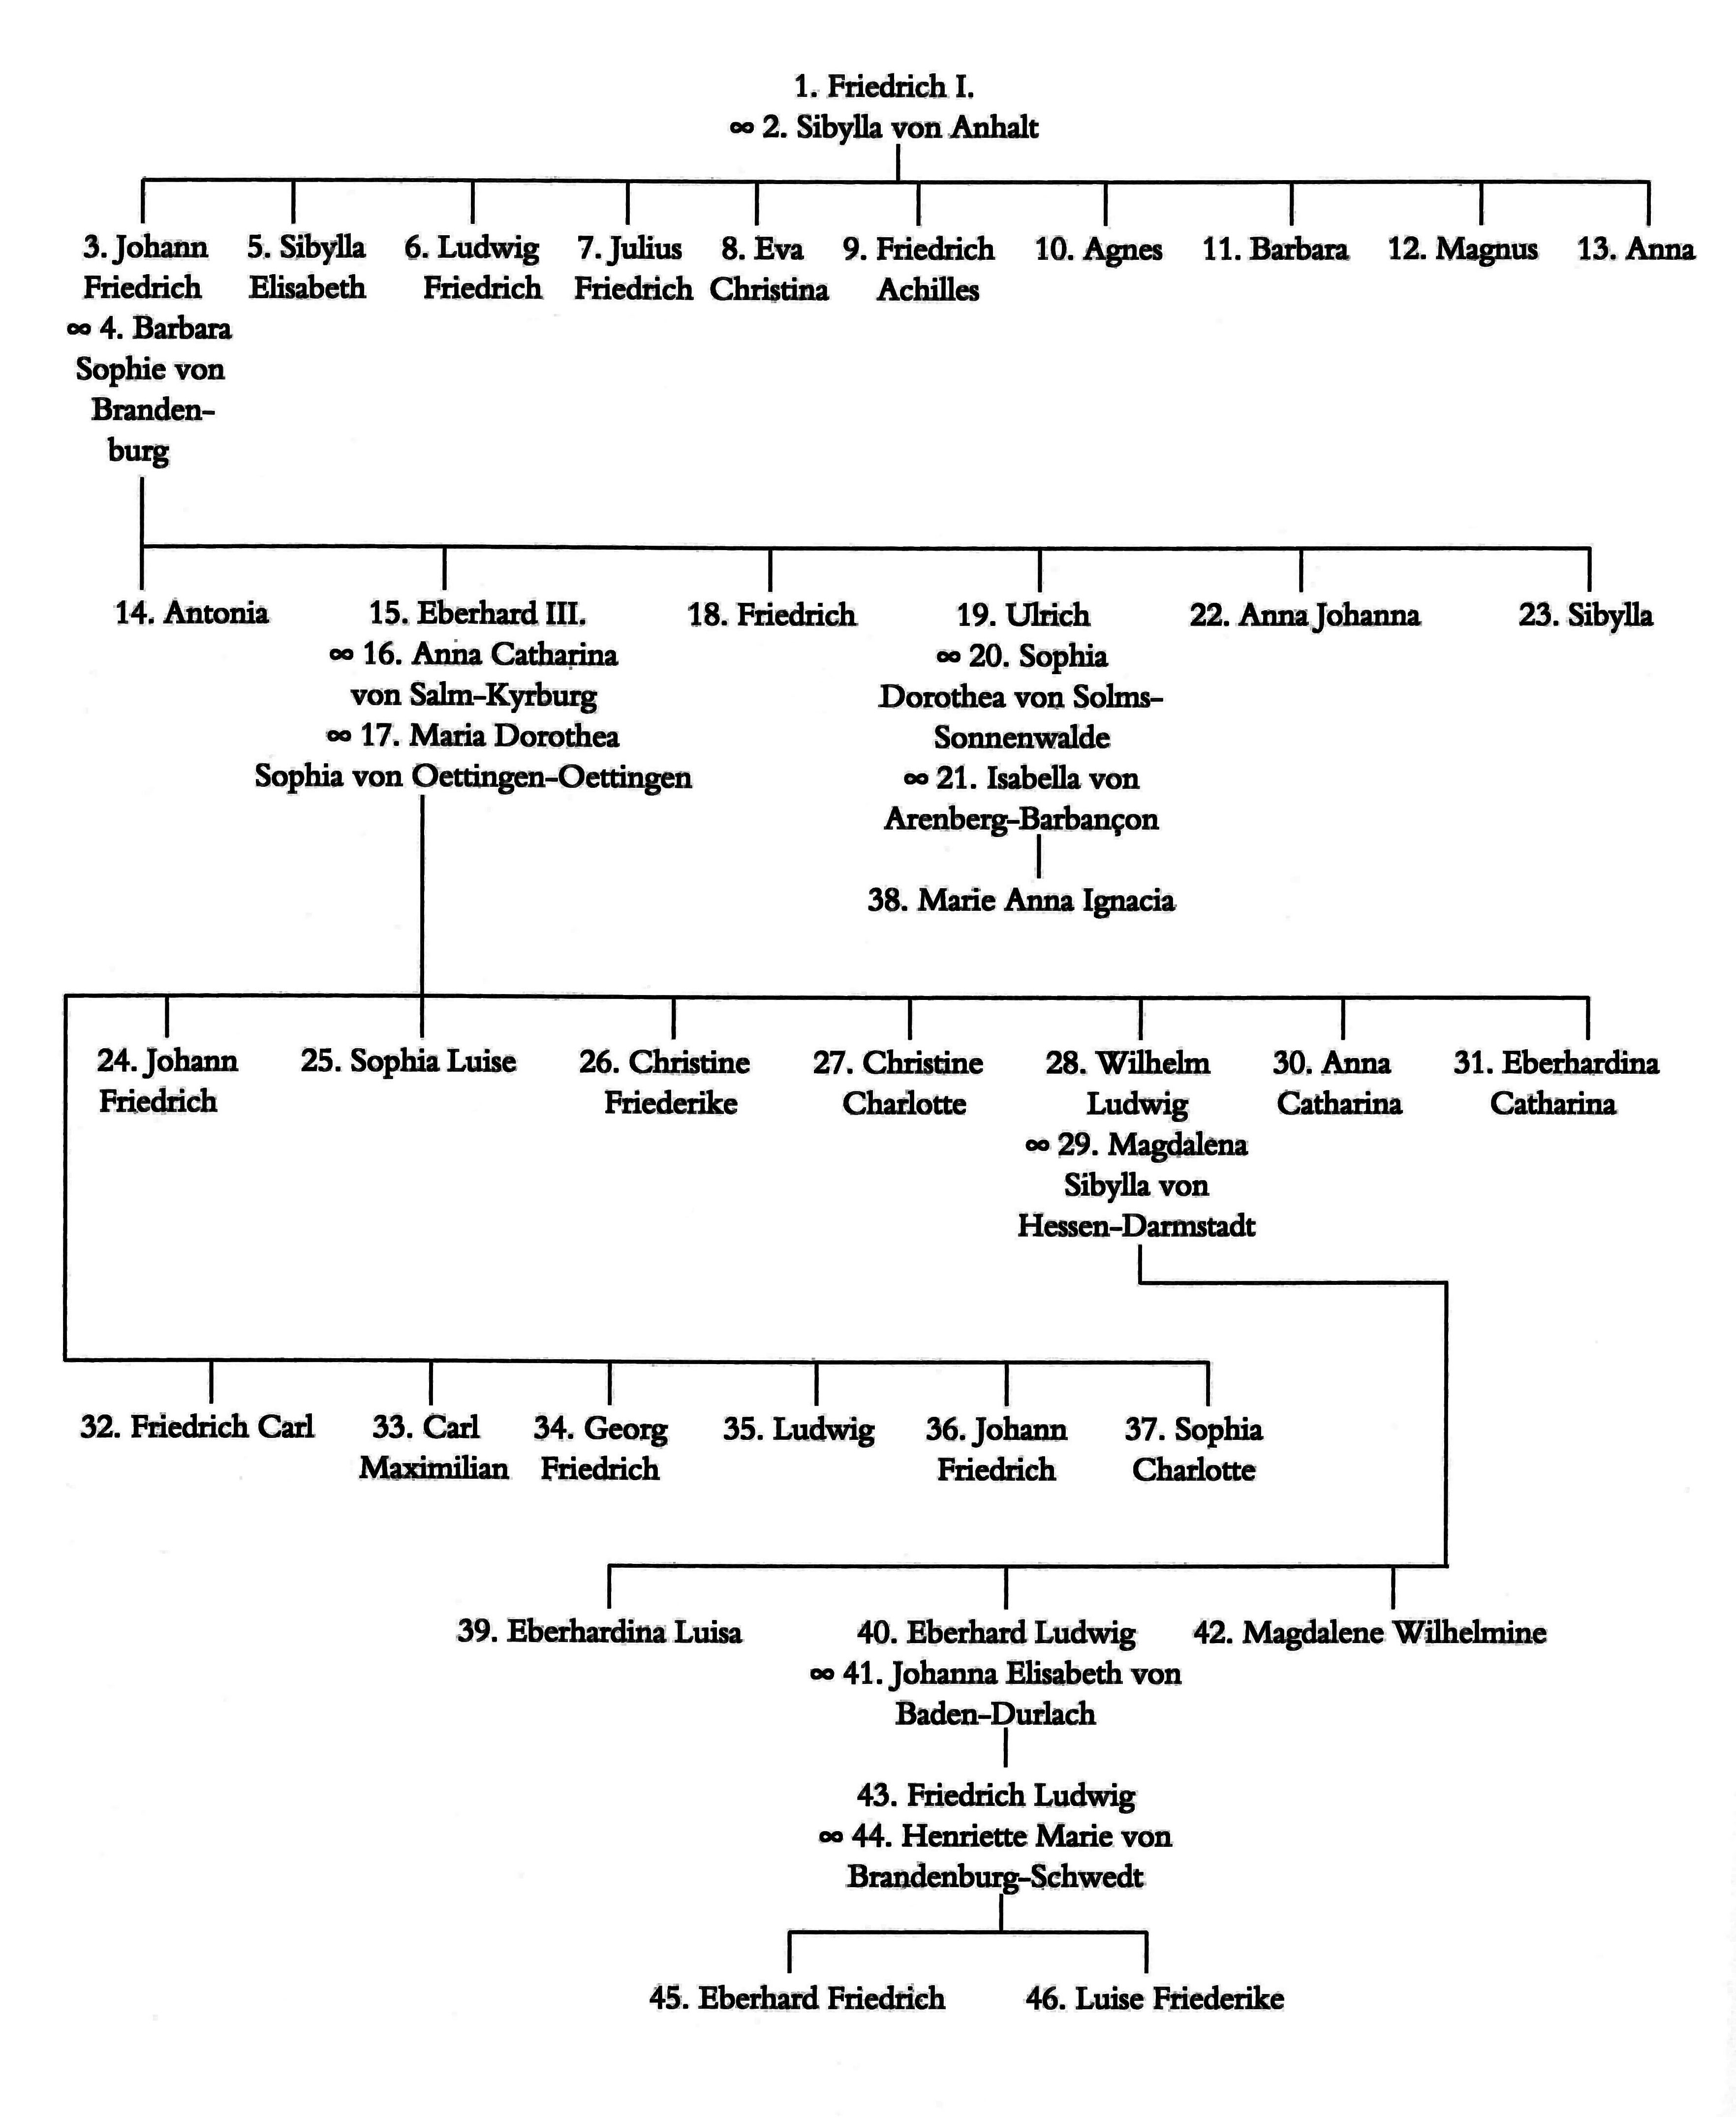 Stammtafel von der Verbindung Herzog Friedrichs I. mit Sibylla von Anhalt bis zu Herzog Eberhard Ludwig und dessen Nachkommen. Mit Eberhard Ludwigs Enkel, der noch im Säuglingsalter starb, endete die Linie im Mannesstamm.